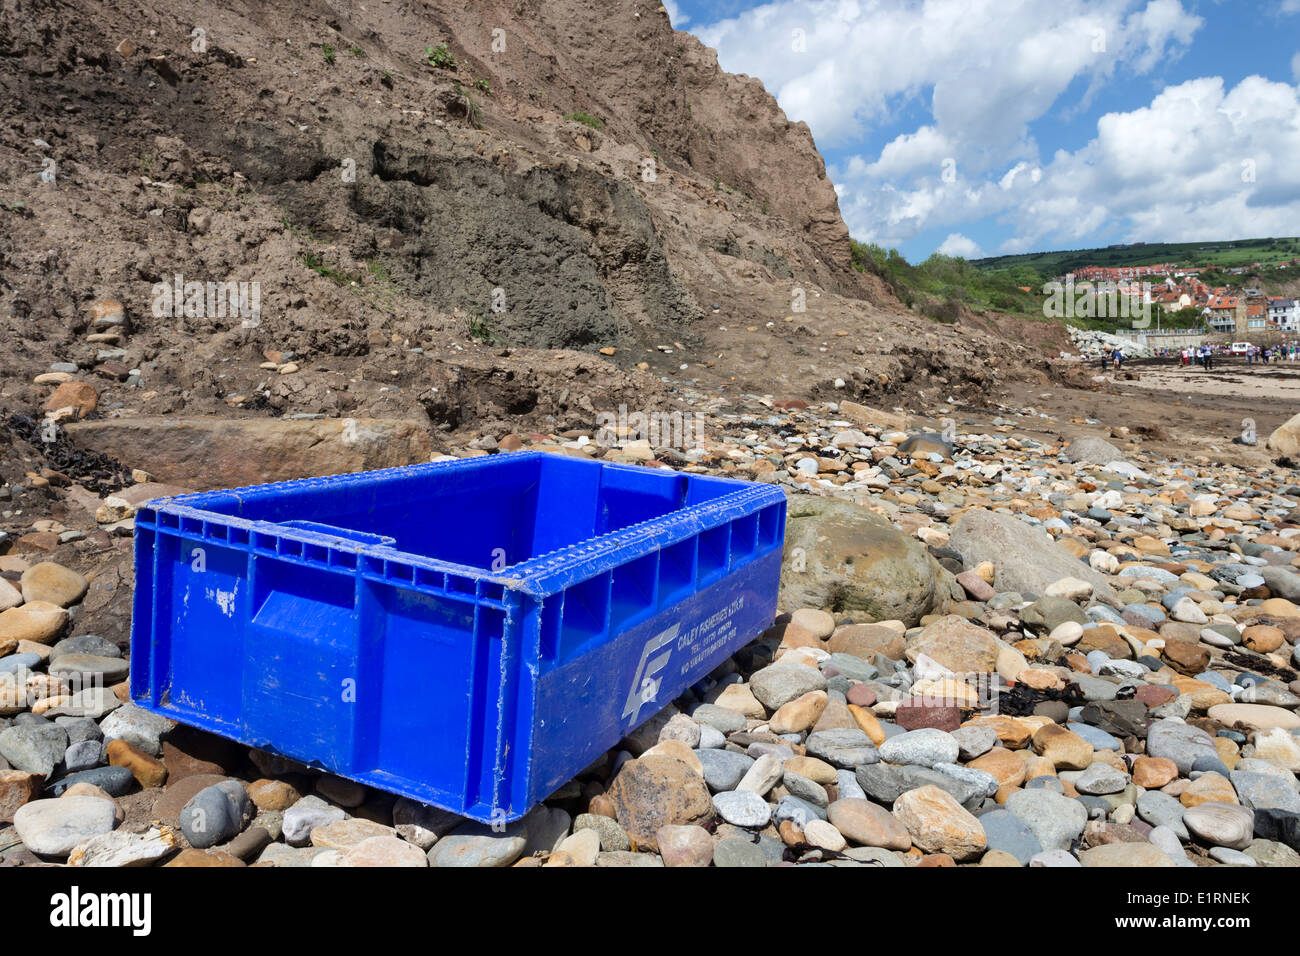 Boîte en plastique crochet de pêche échoué sur une plage de North Yorkshire England UK Banque D'Images